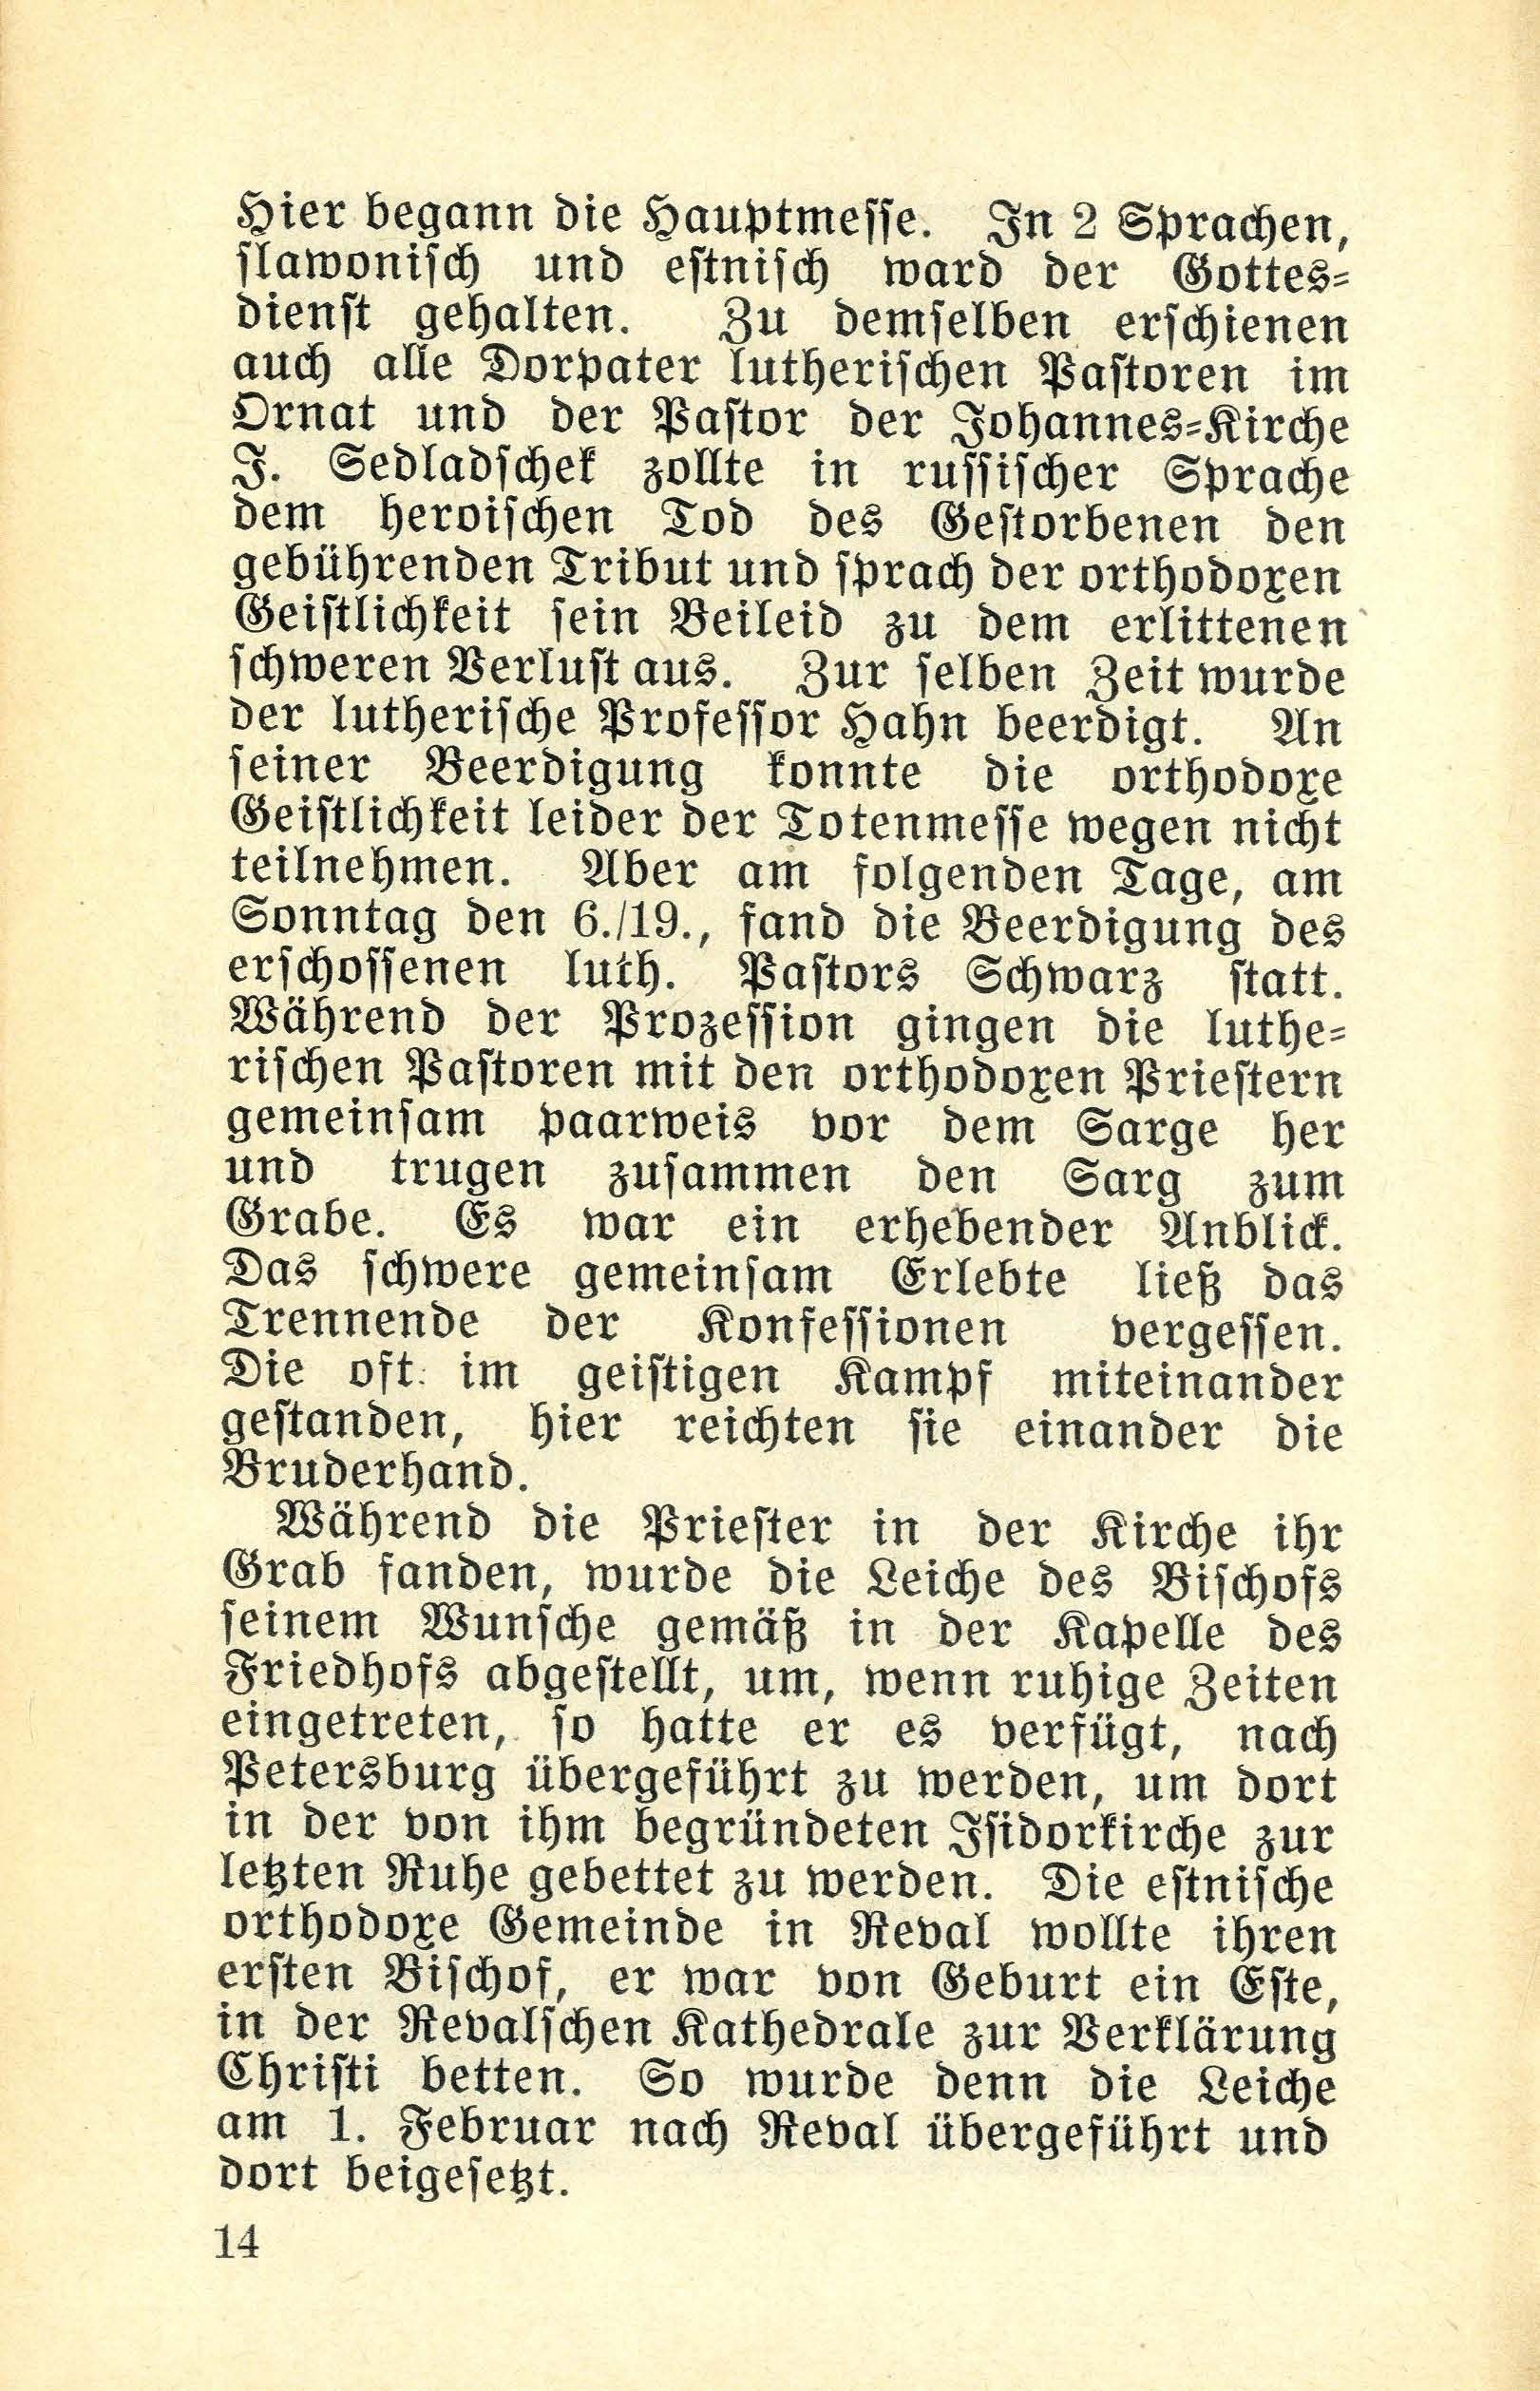 Die Dorpatschen Märtyrer der orthodoxen Kirche vom Jahre 1919 (1932) | 15. (14) Main body of text